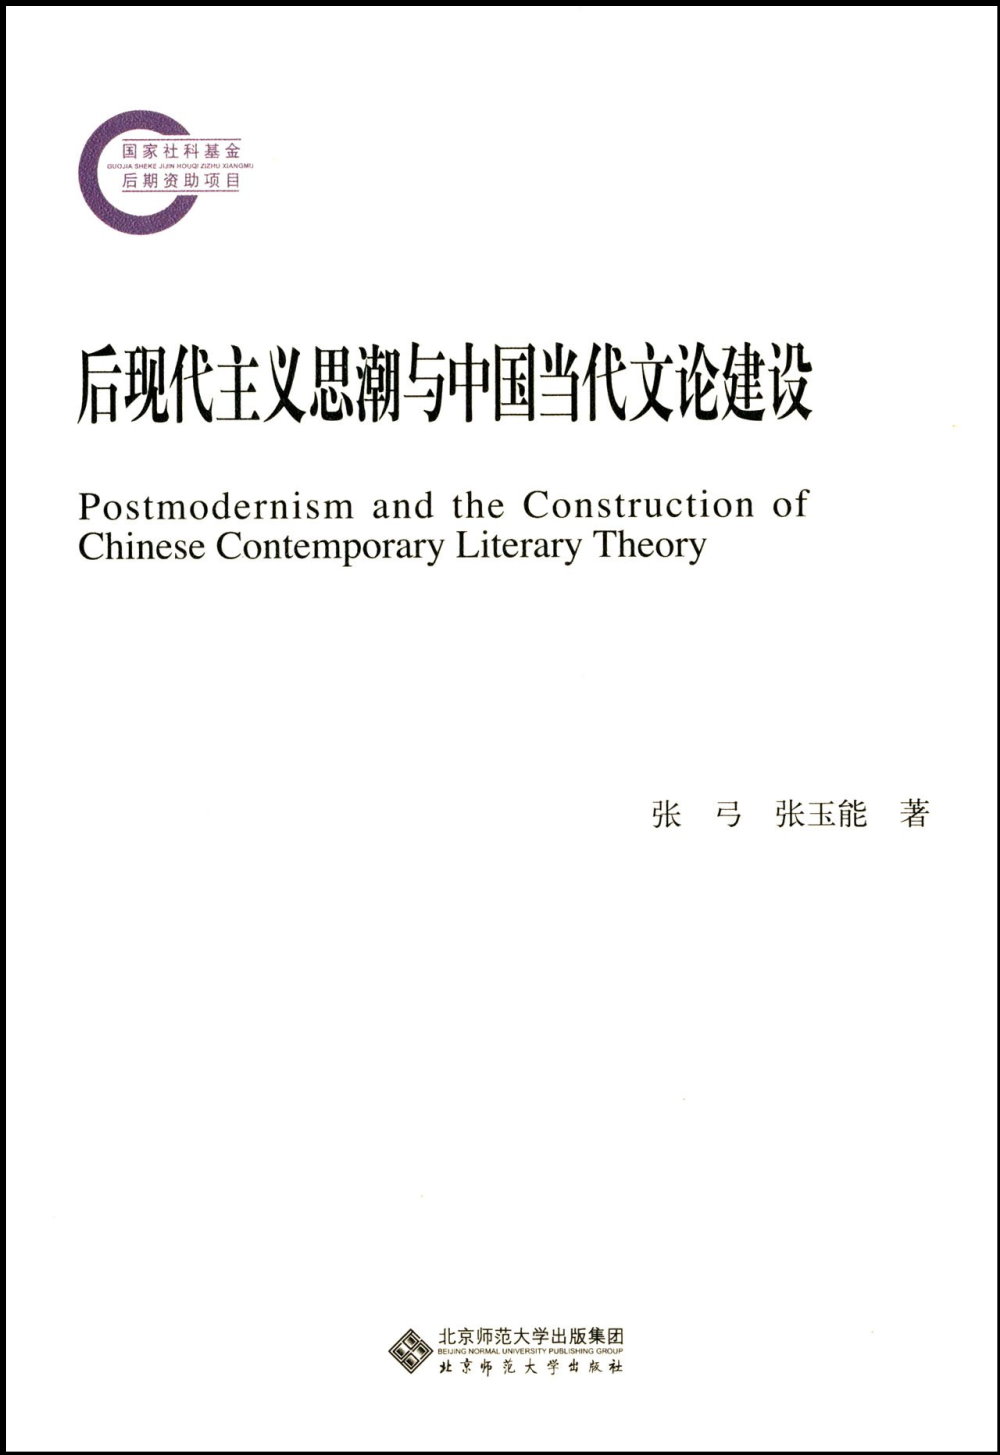 後現代主義思潮與中國當代文論建設